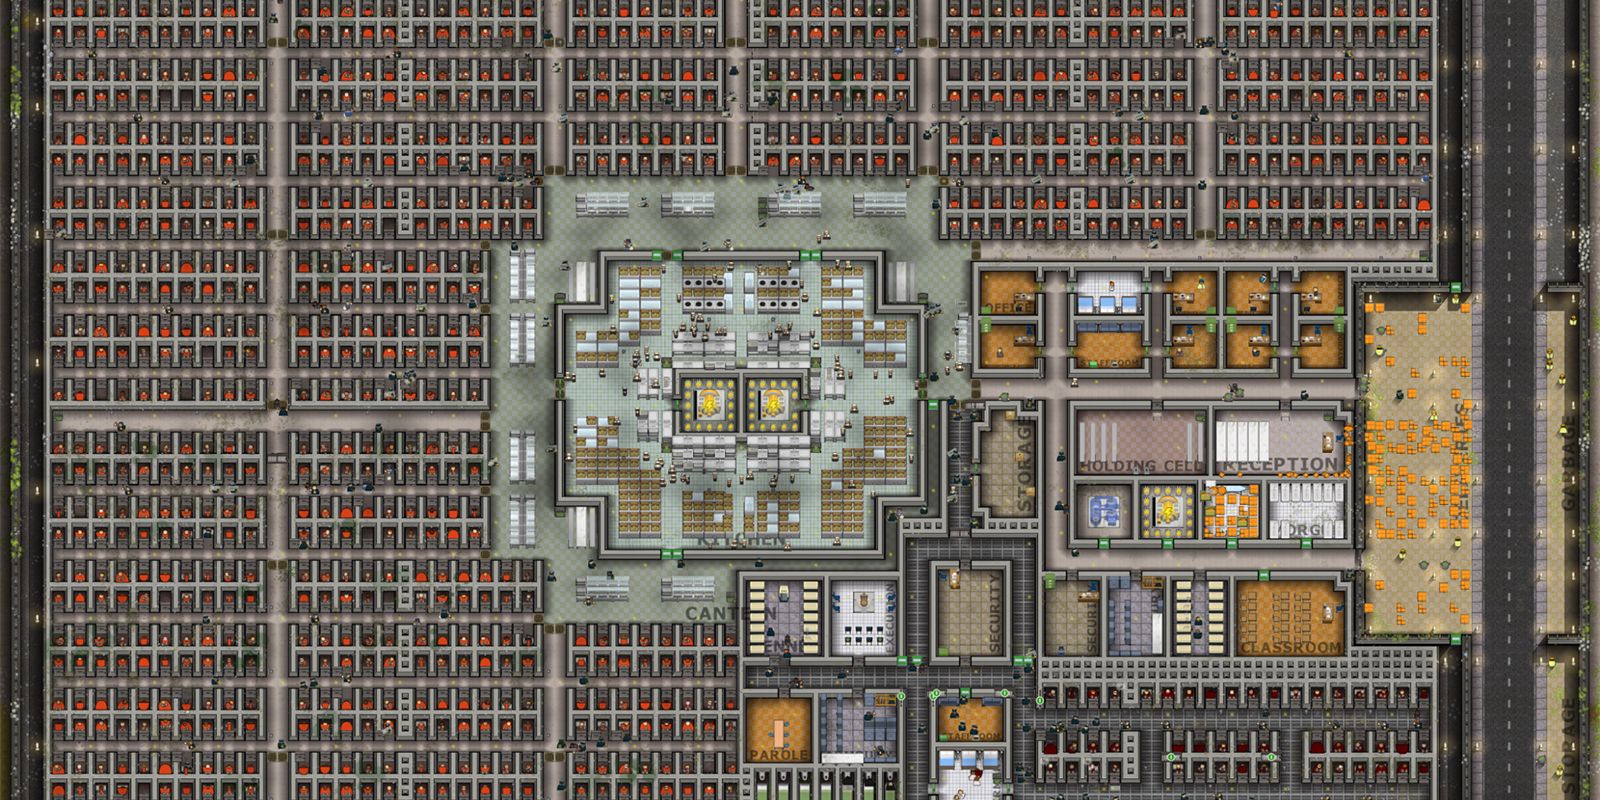 prison architect create blueprints